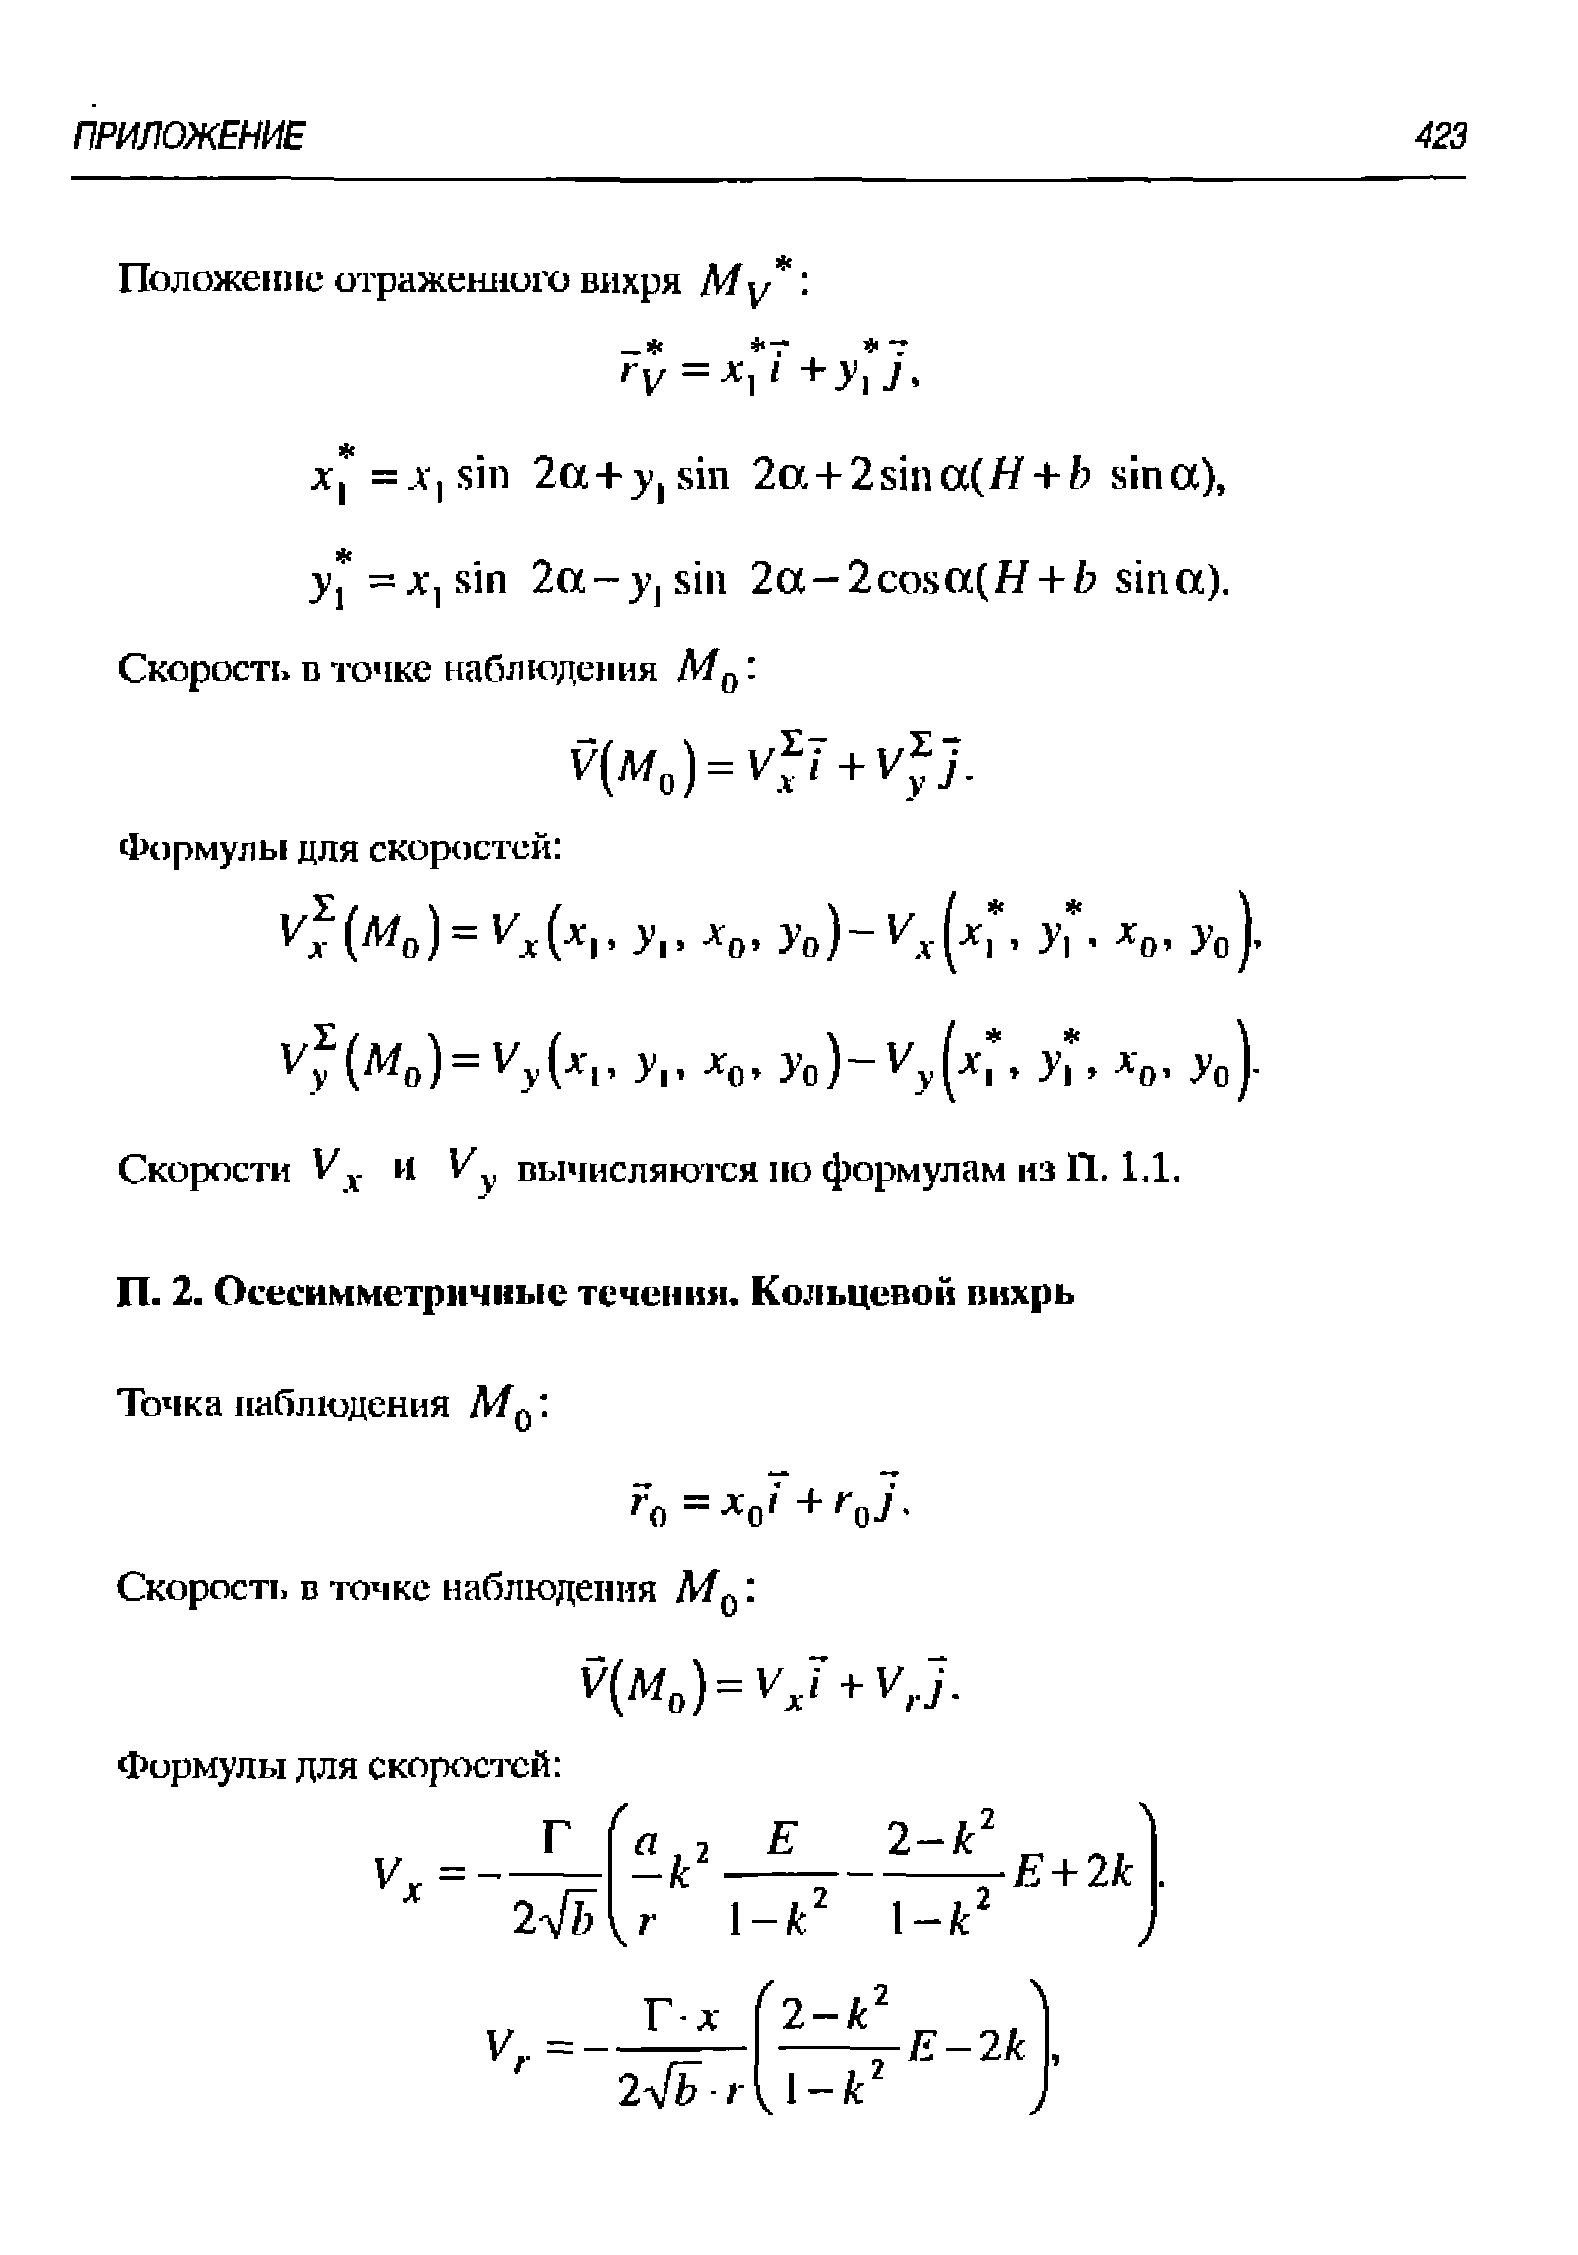 Скорости V . и вычисляются по формулам из 11.1.1.
